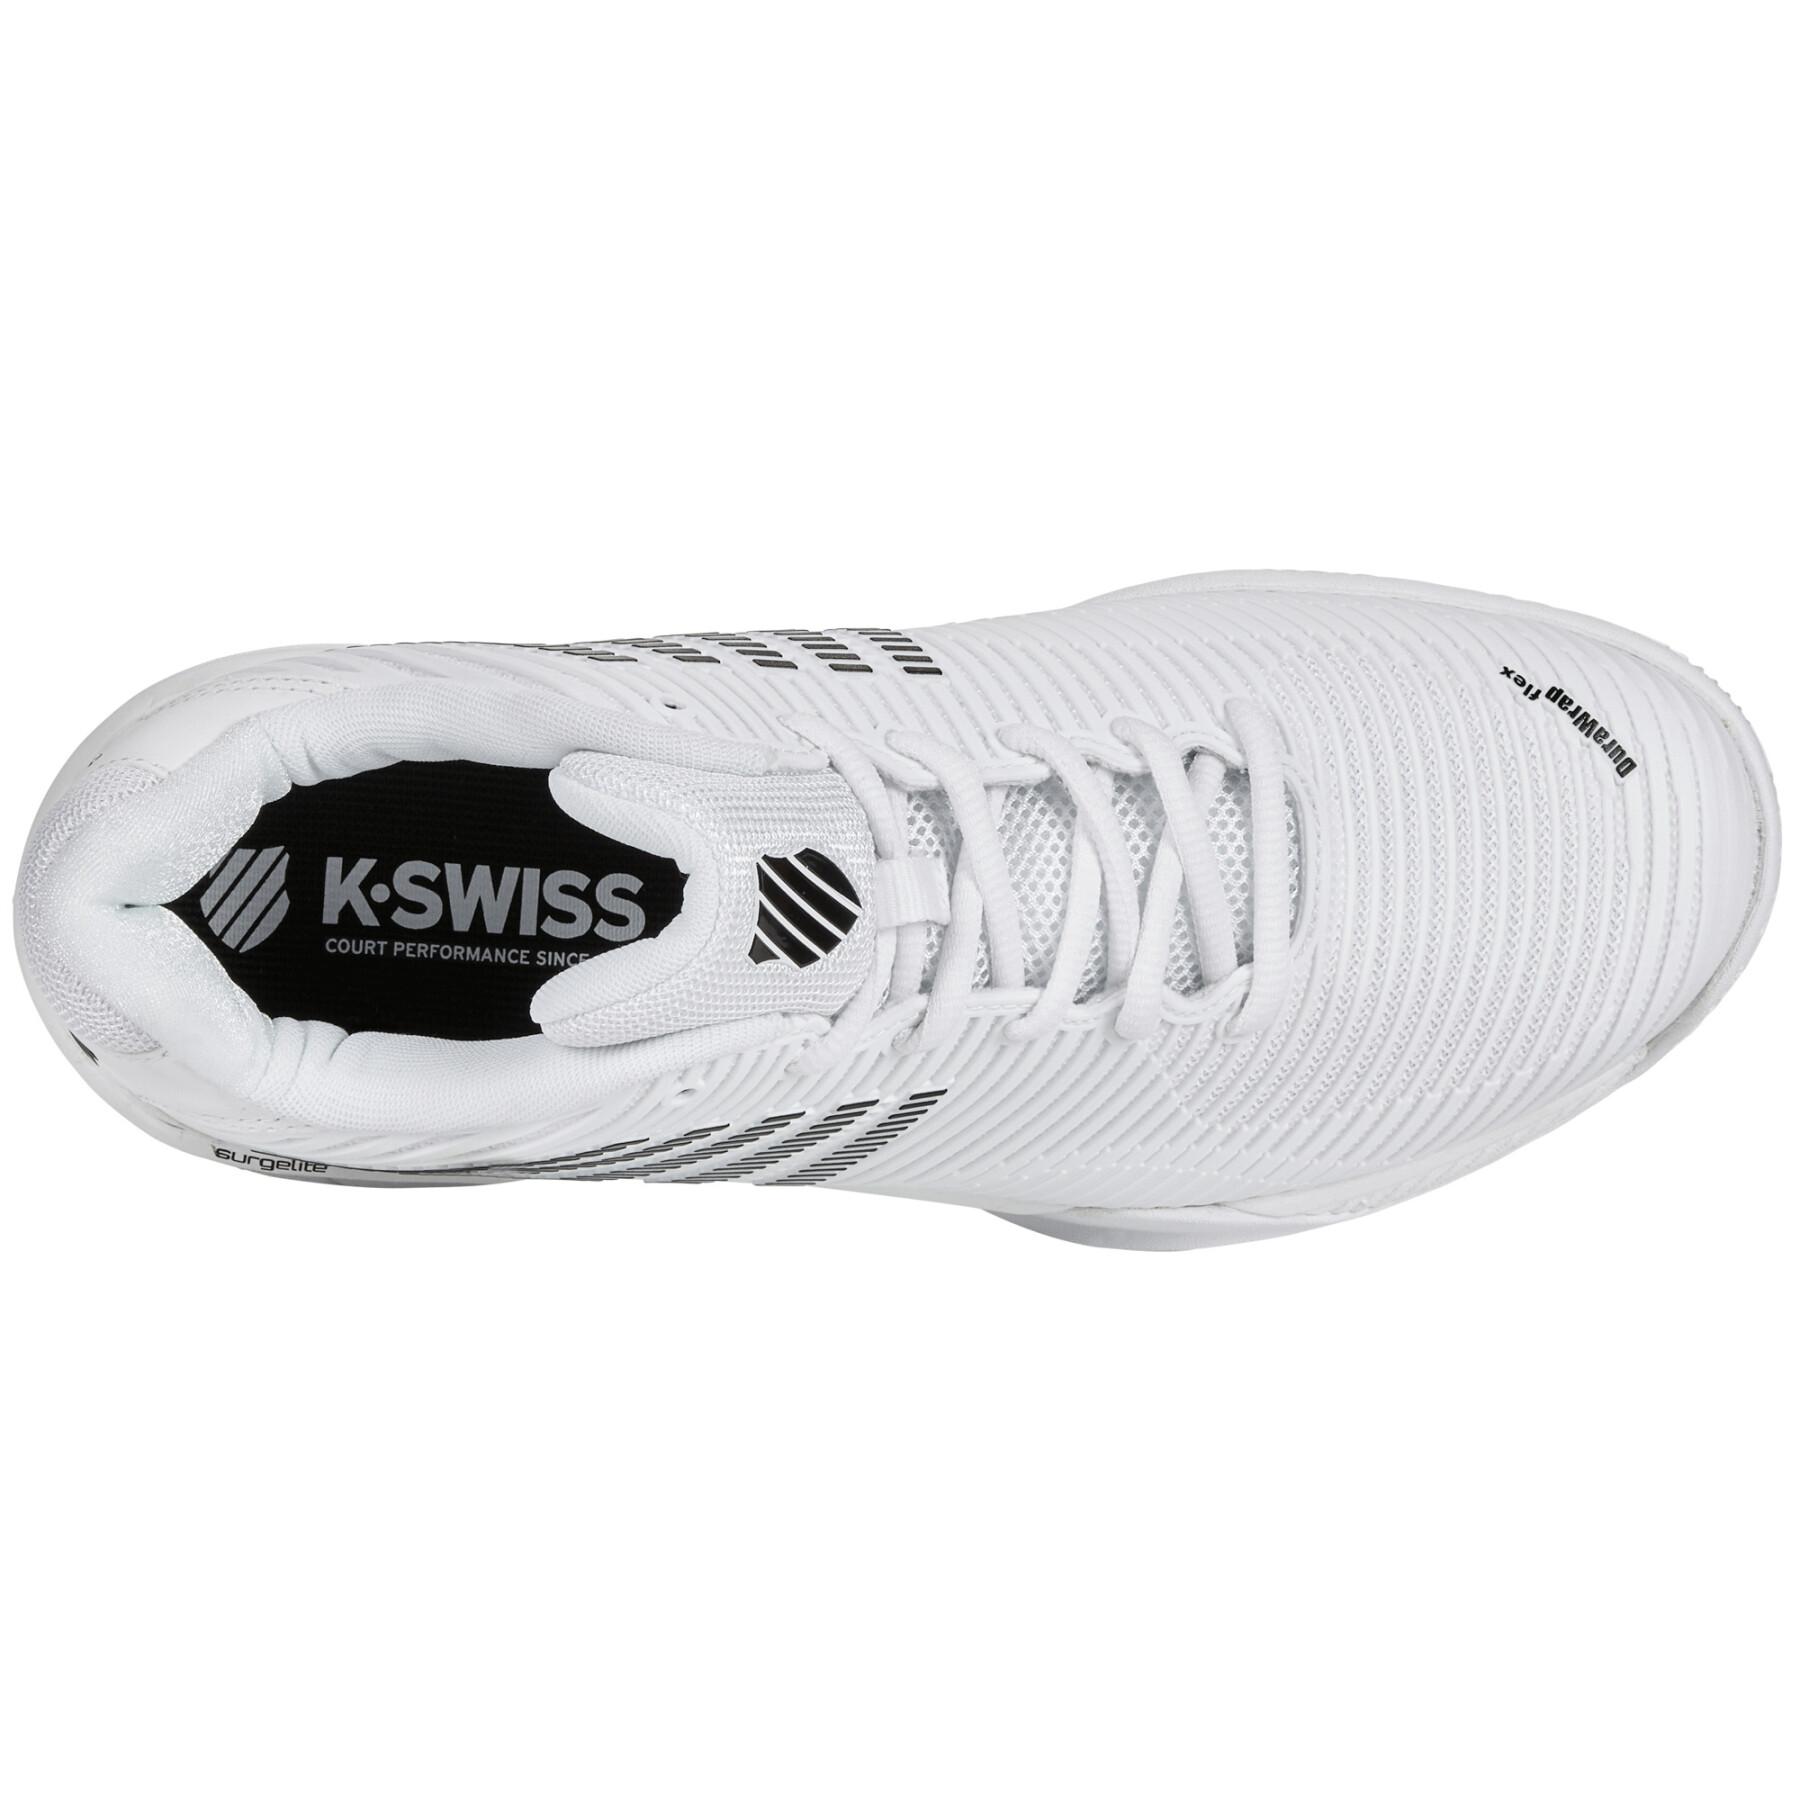 Tennis shoes K-Swiss Hypercourt Express 2 Hb